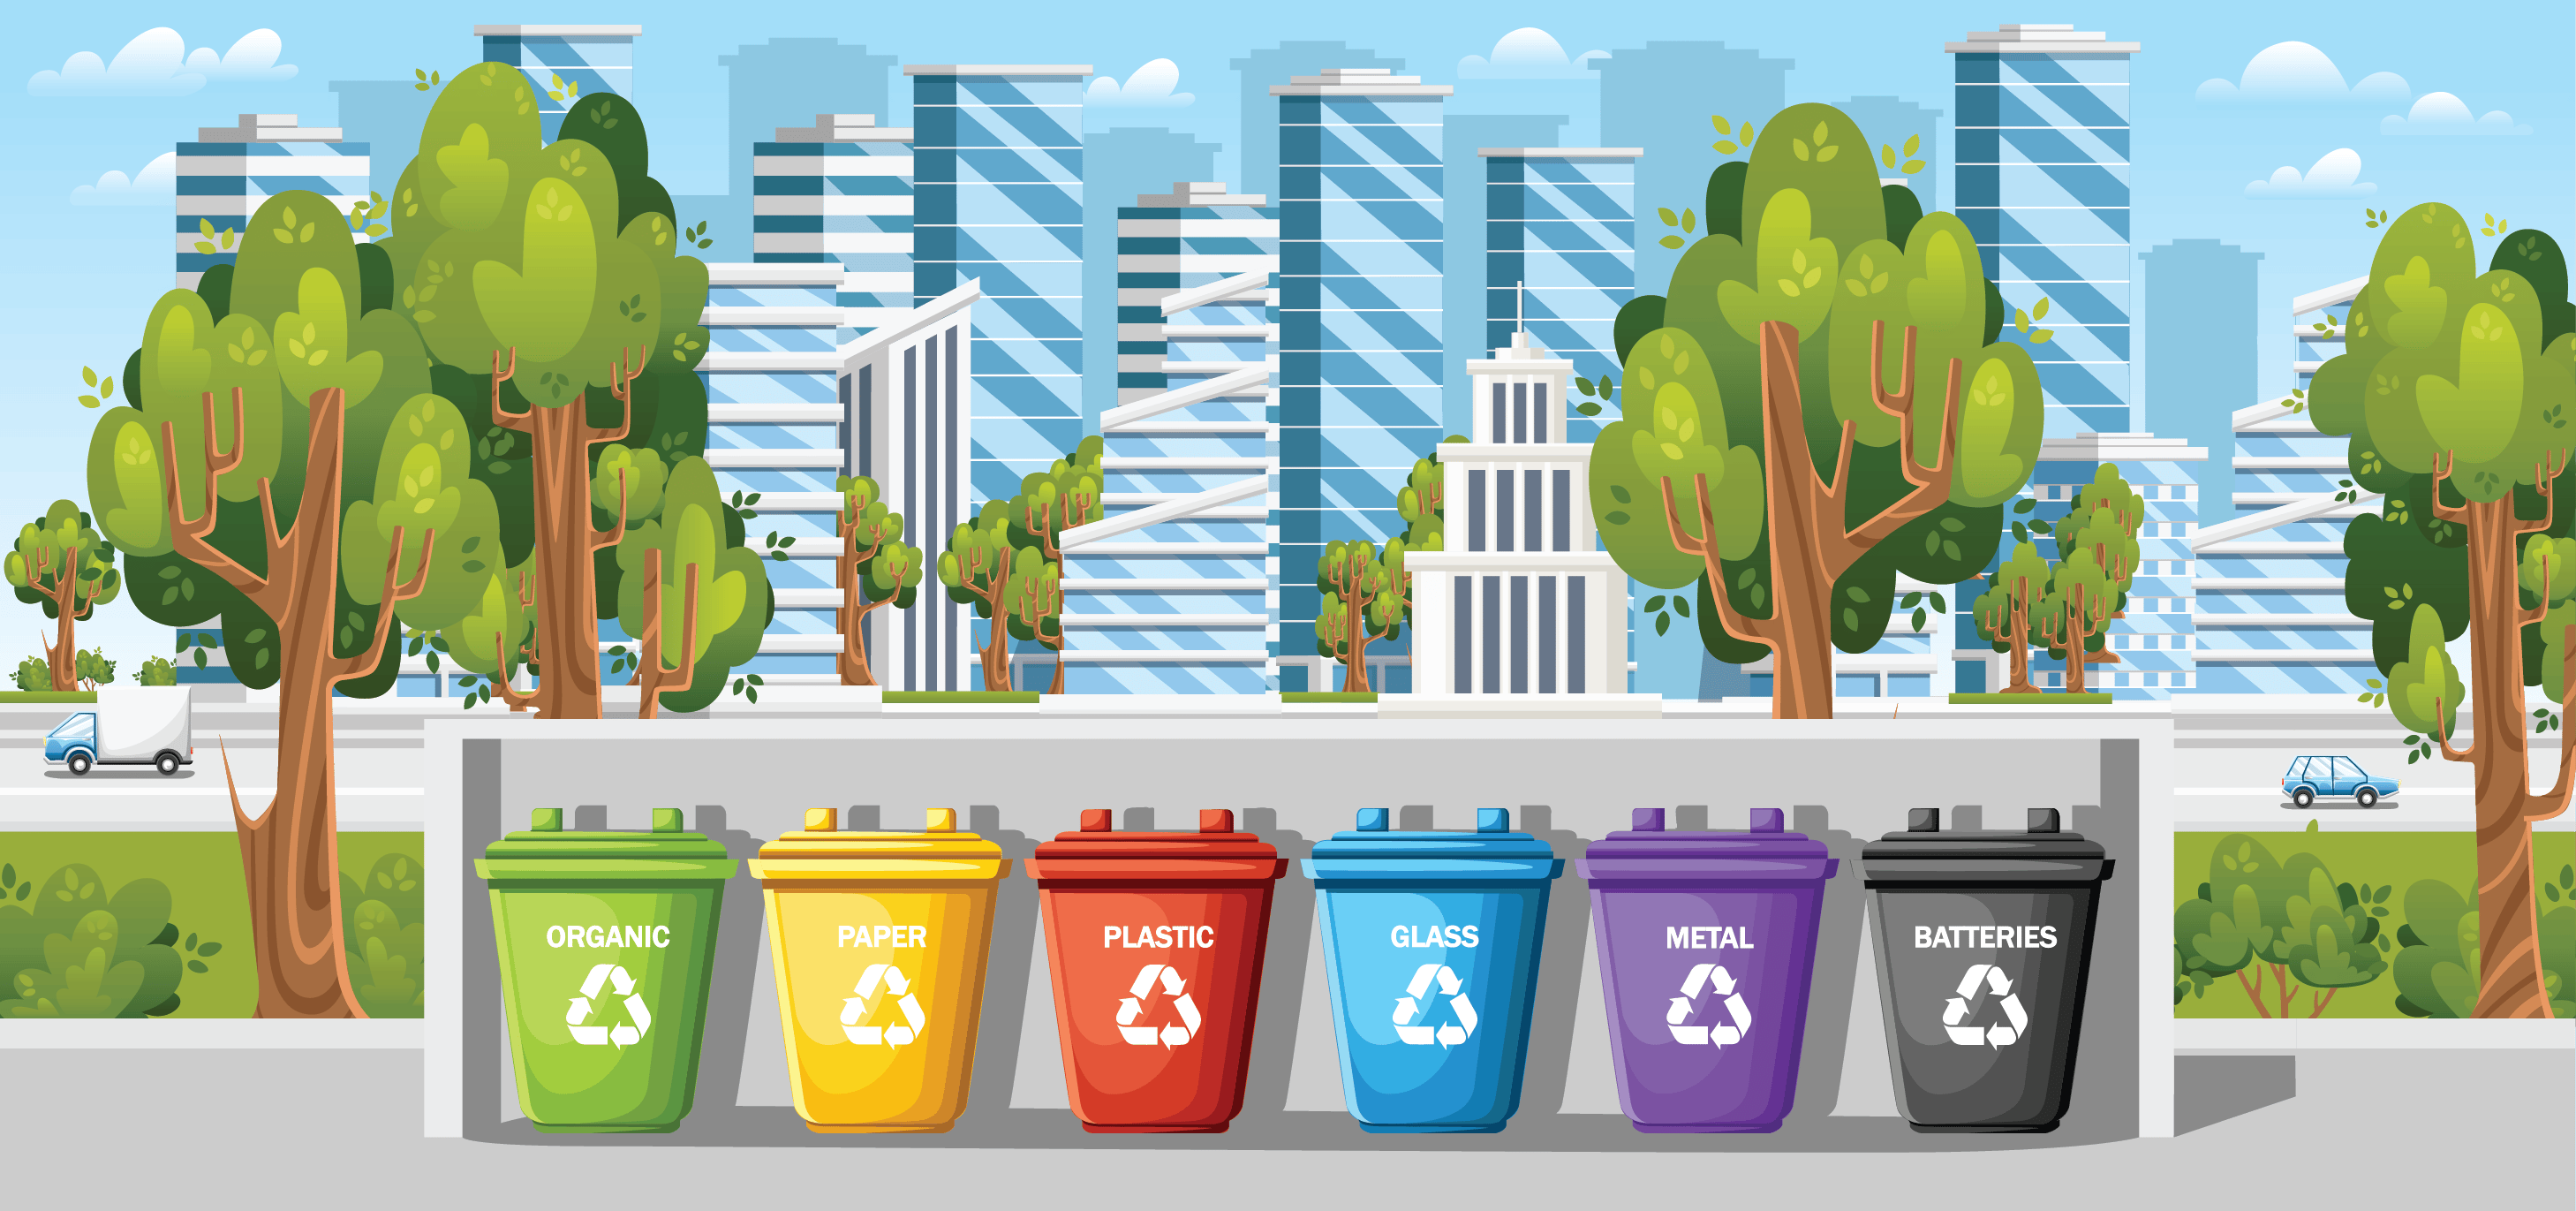 افزایش آگاهی عمومی نسبت به اهمیت بازیافت